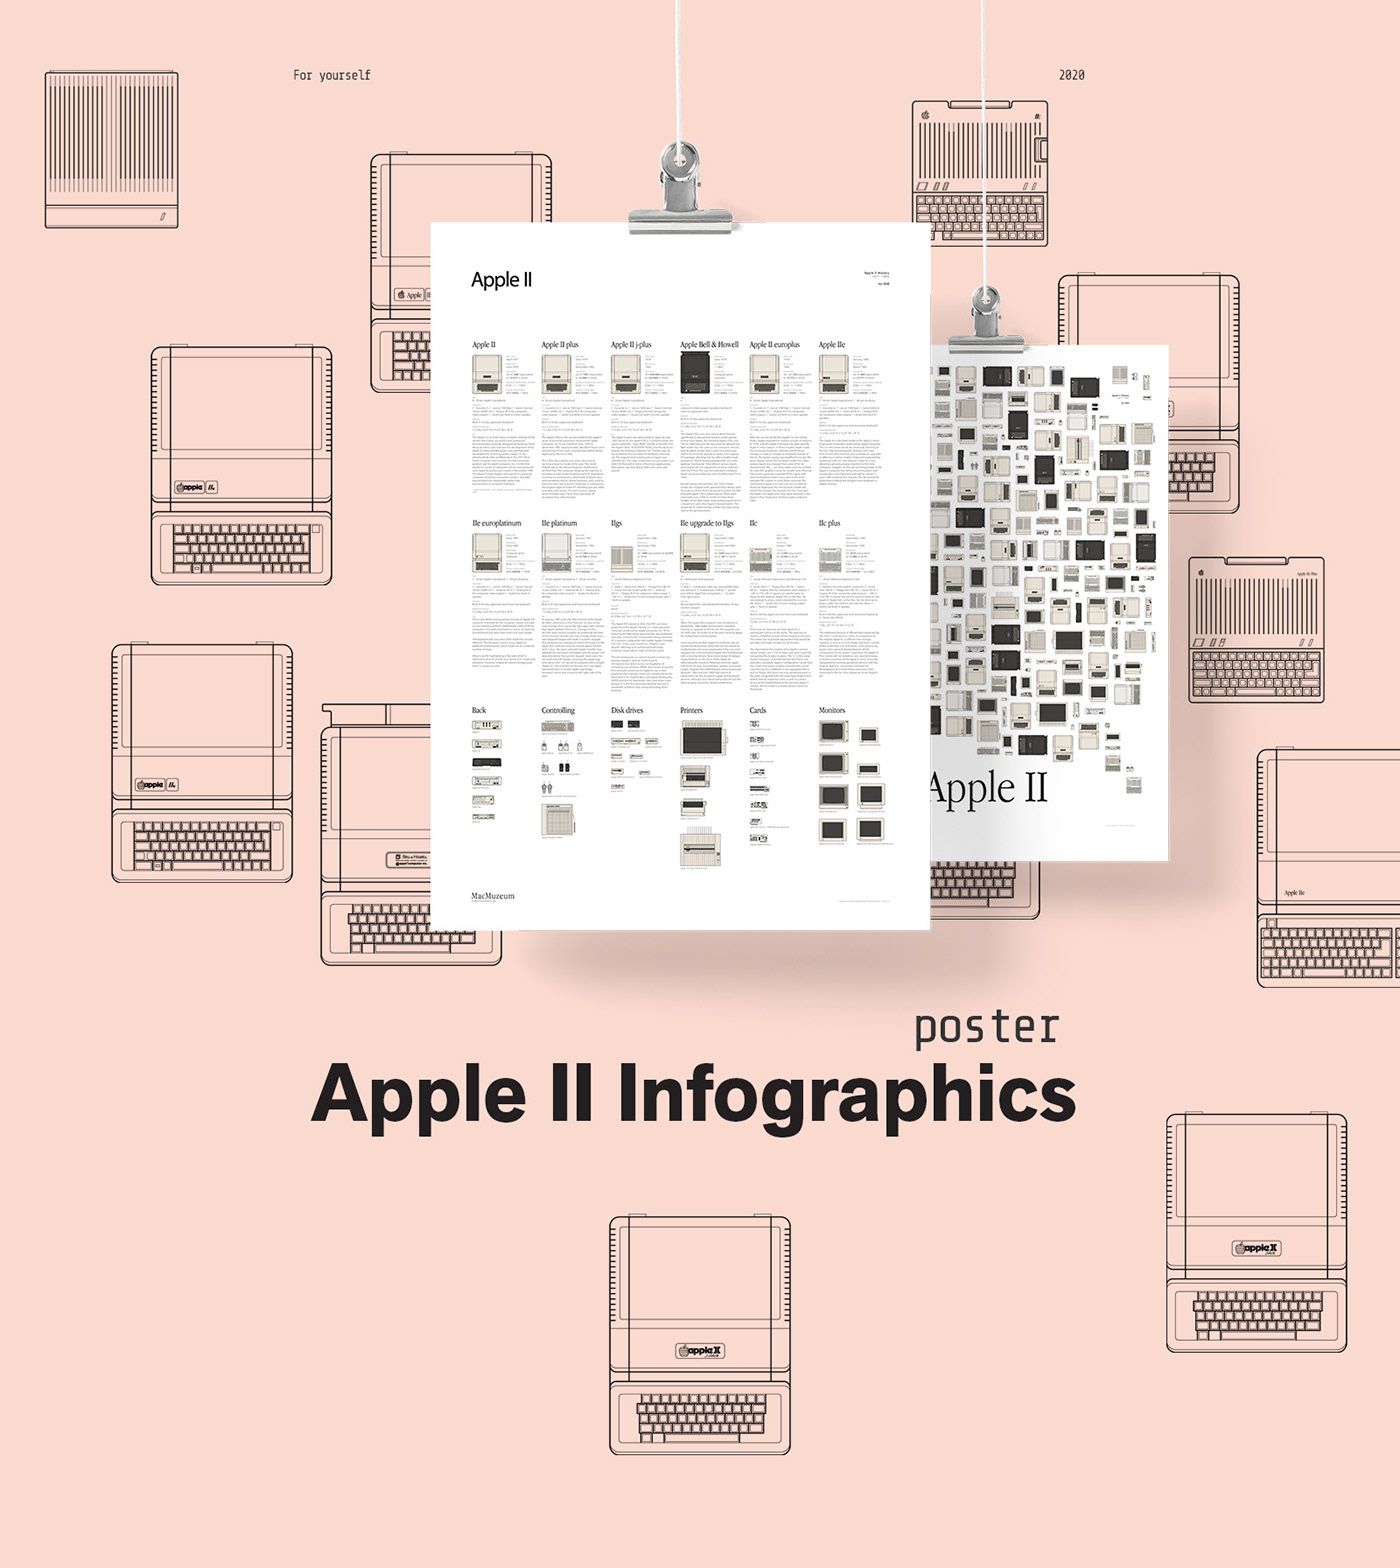 apple artwork Computer Art Digital Art  ILLUSTRATION  poster Poster Design print print design  vintage